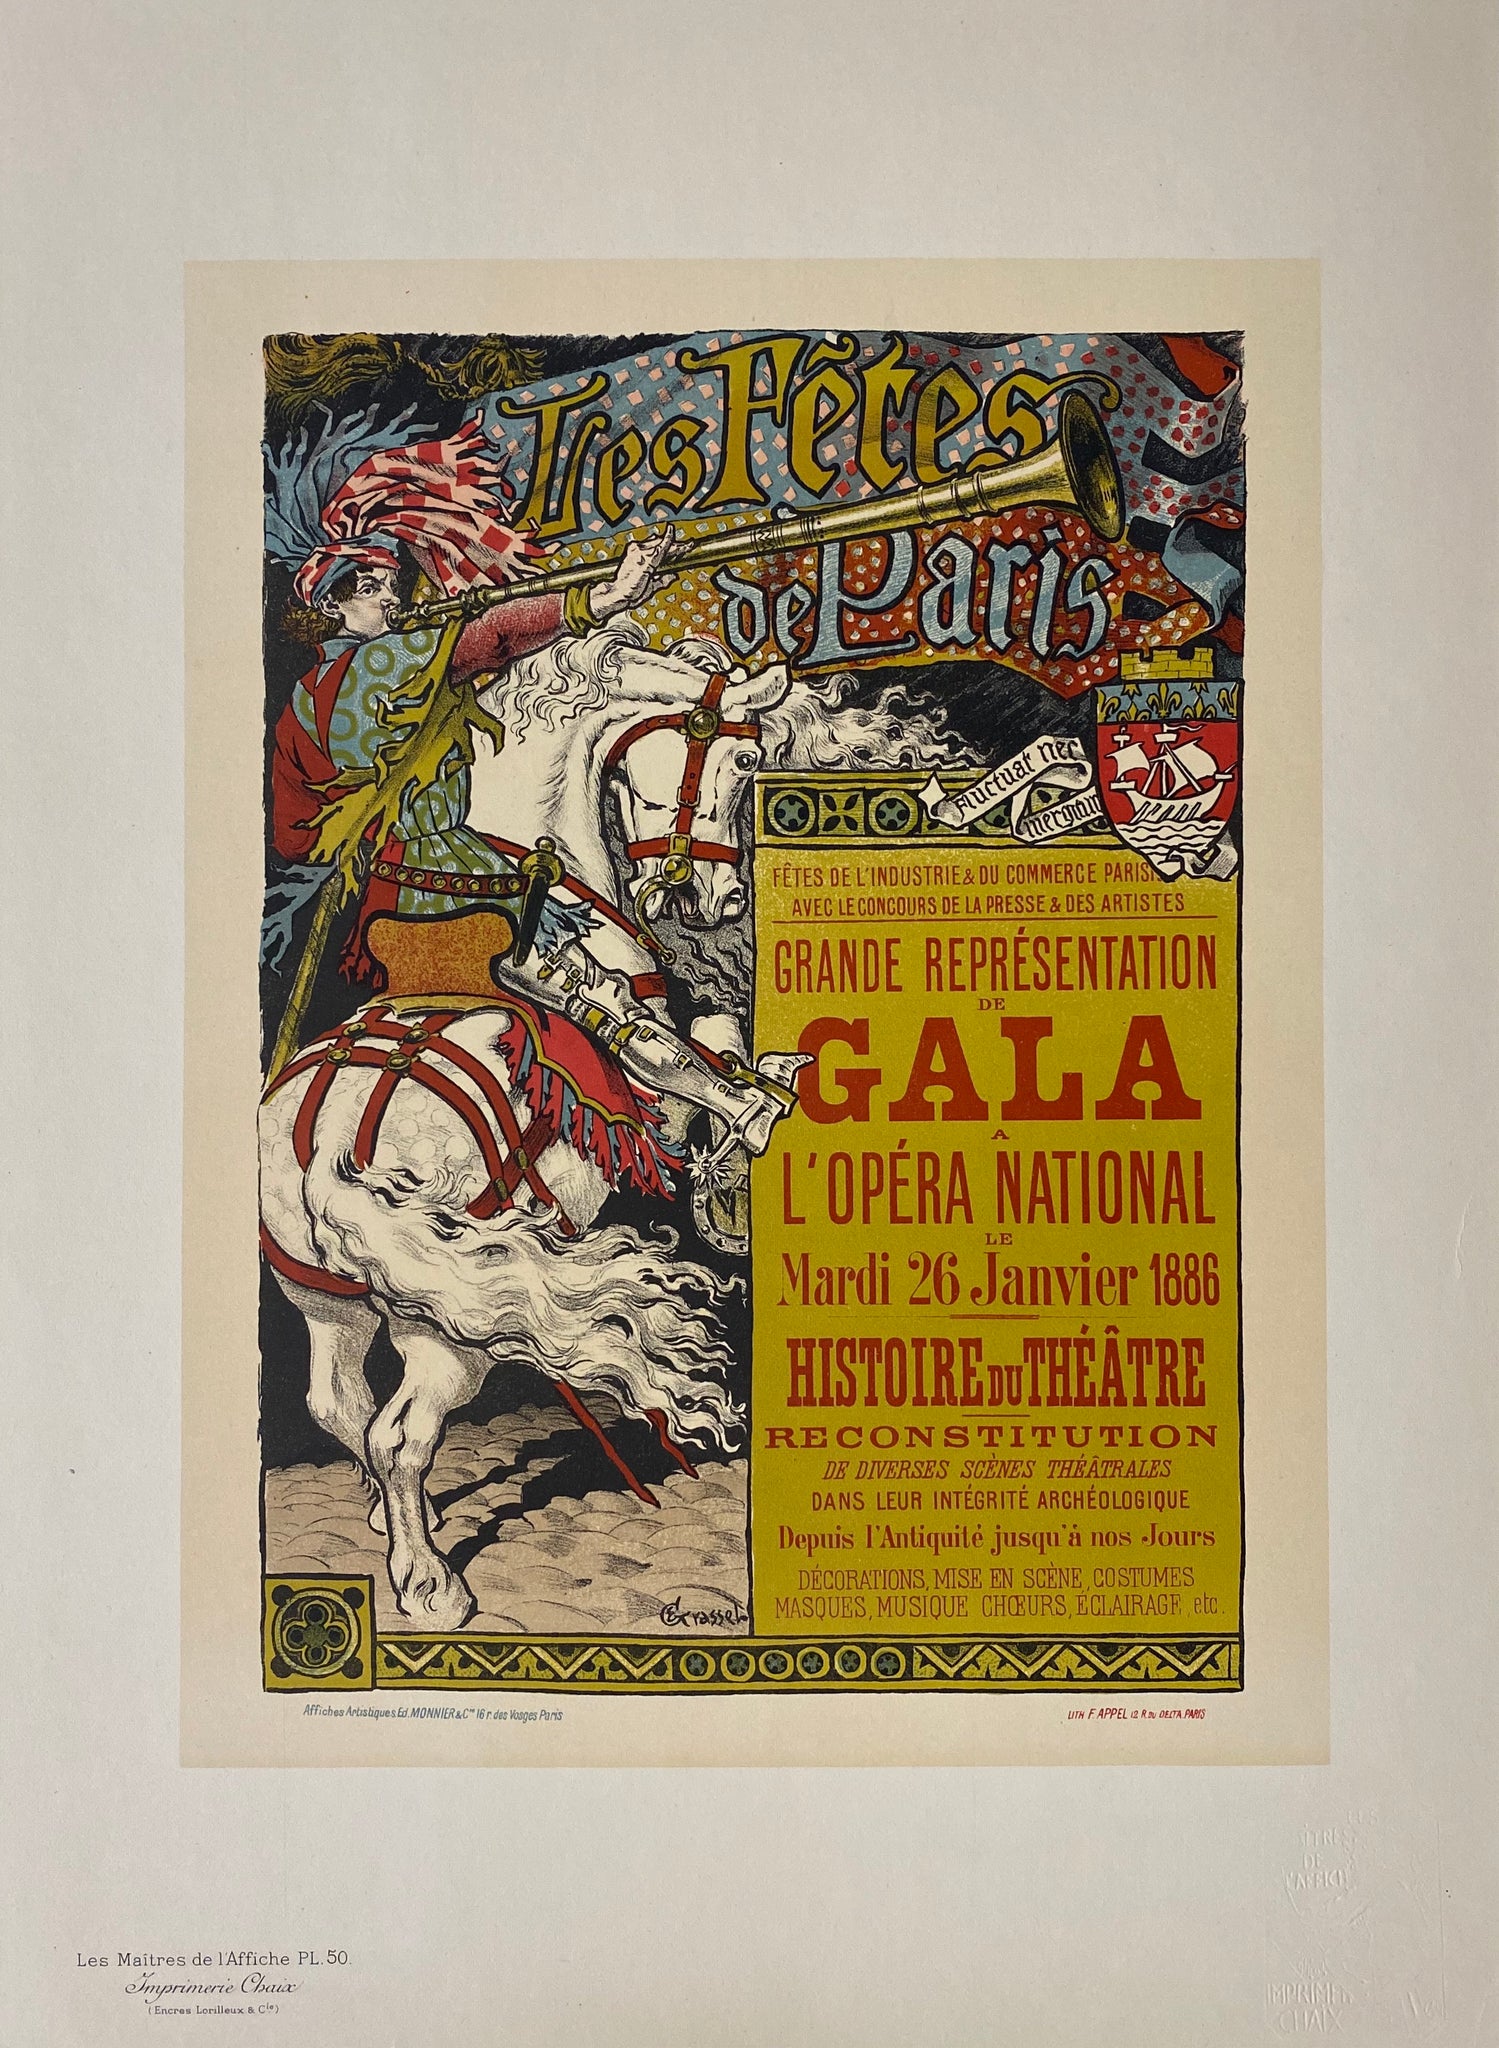 Maitre de l'affiche Planche 50 Les fêtes de Paris Eugène Grasset 1897